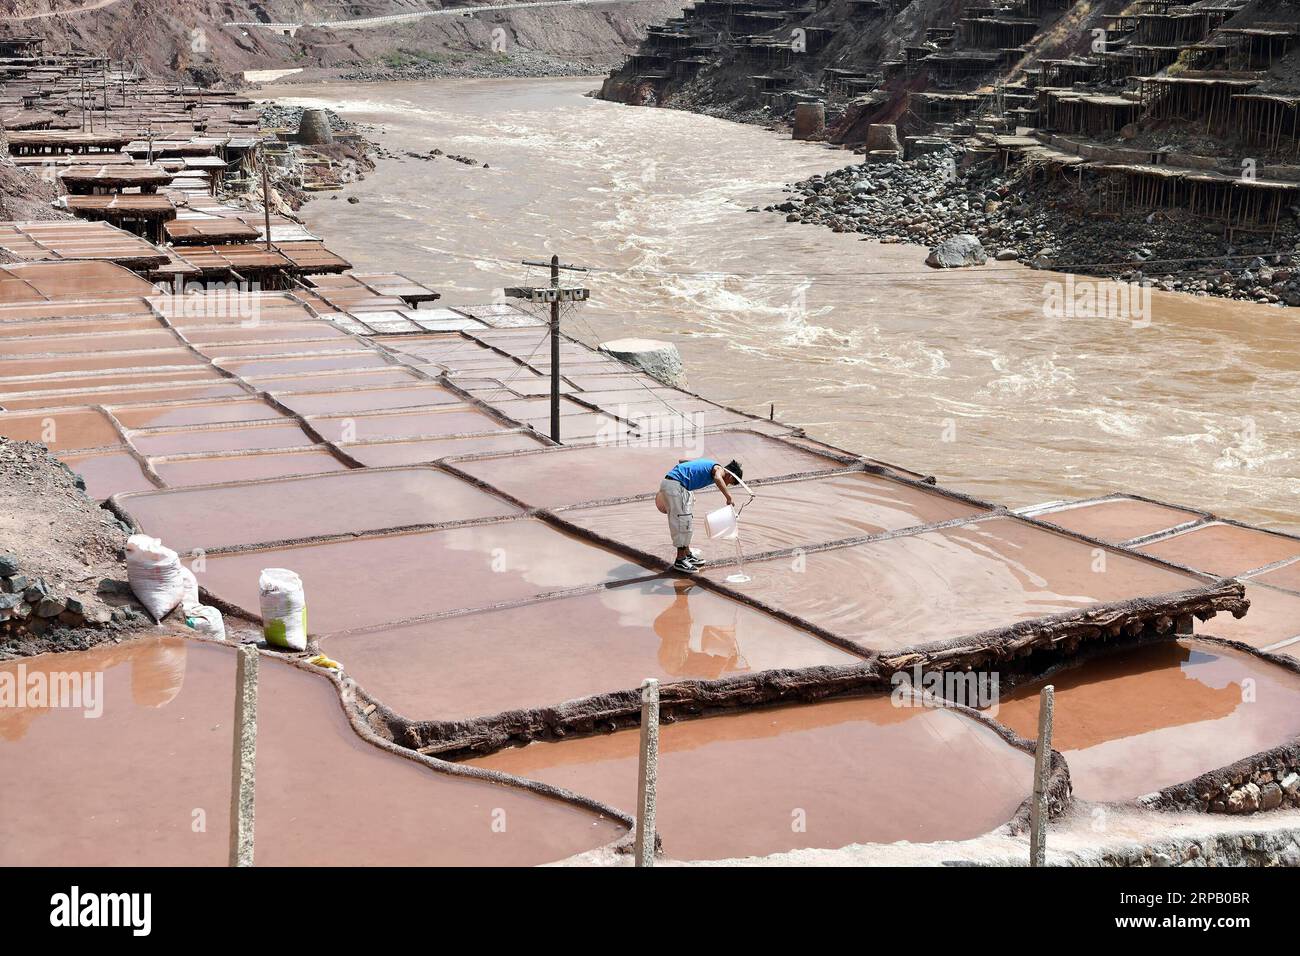 (190523) -- LHASSA, 23 mai 2019 (Xinhua) -- Un villageois verse de la saumure dans des champs salins du comté de Mangkam, région autonome du Tibet du sud-ouest de la Chine, 22 mai 2019. Une ancienne technique de production de sel depuis la dynastie Tang (618-907) est bien conservée dans le comté de Mangkam. Les populations locales suivent une méthode de récolte du sel en recueillant les saumures des mines de sel et des étangs et en les évaporant au soleil jusqu'à cristallisation. (Xinhua/Li Xin) CHINE-TIBET-MANGKAM-PRODUCTION DE SEL (CN) PUBLICATIONxNOTxINxCHN Banque D'Images